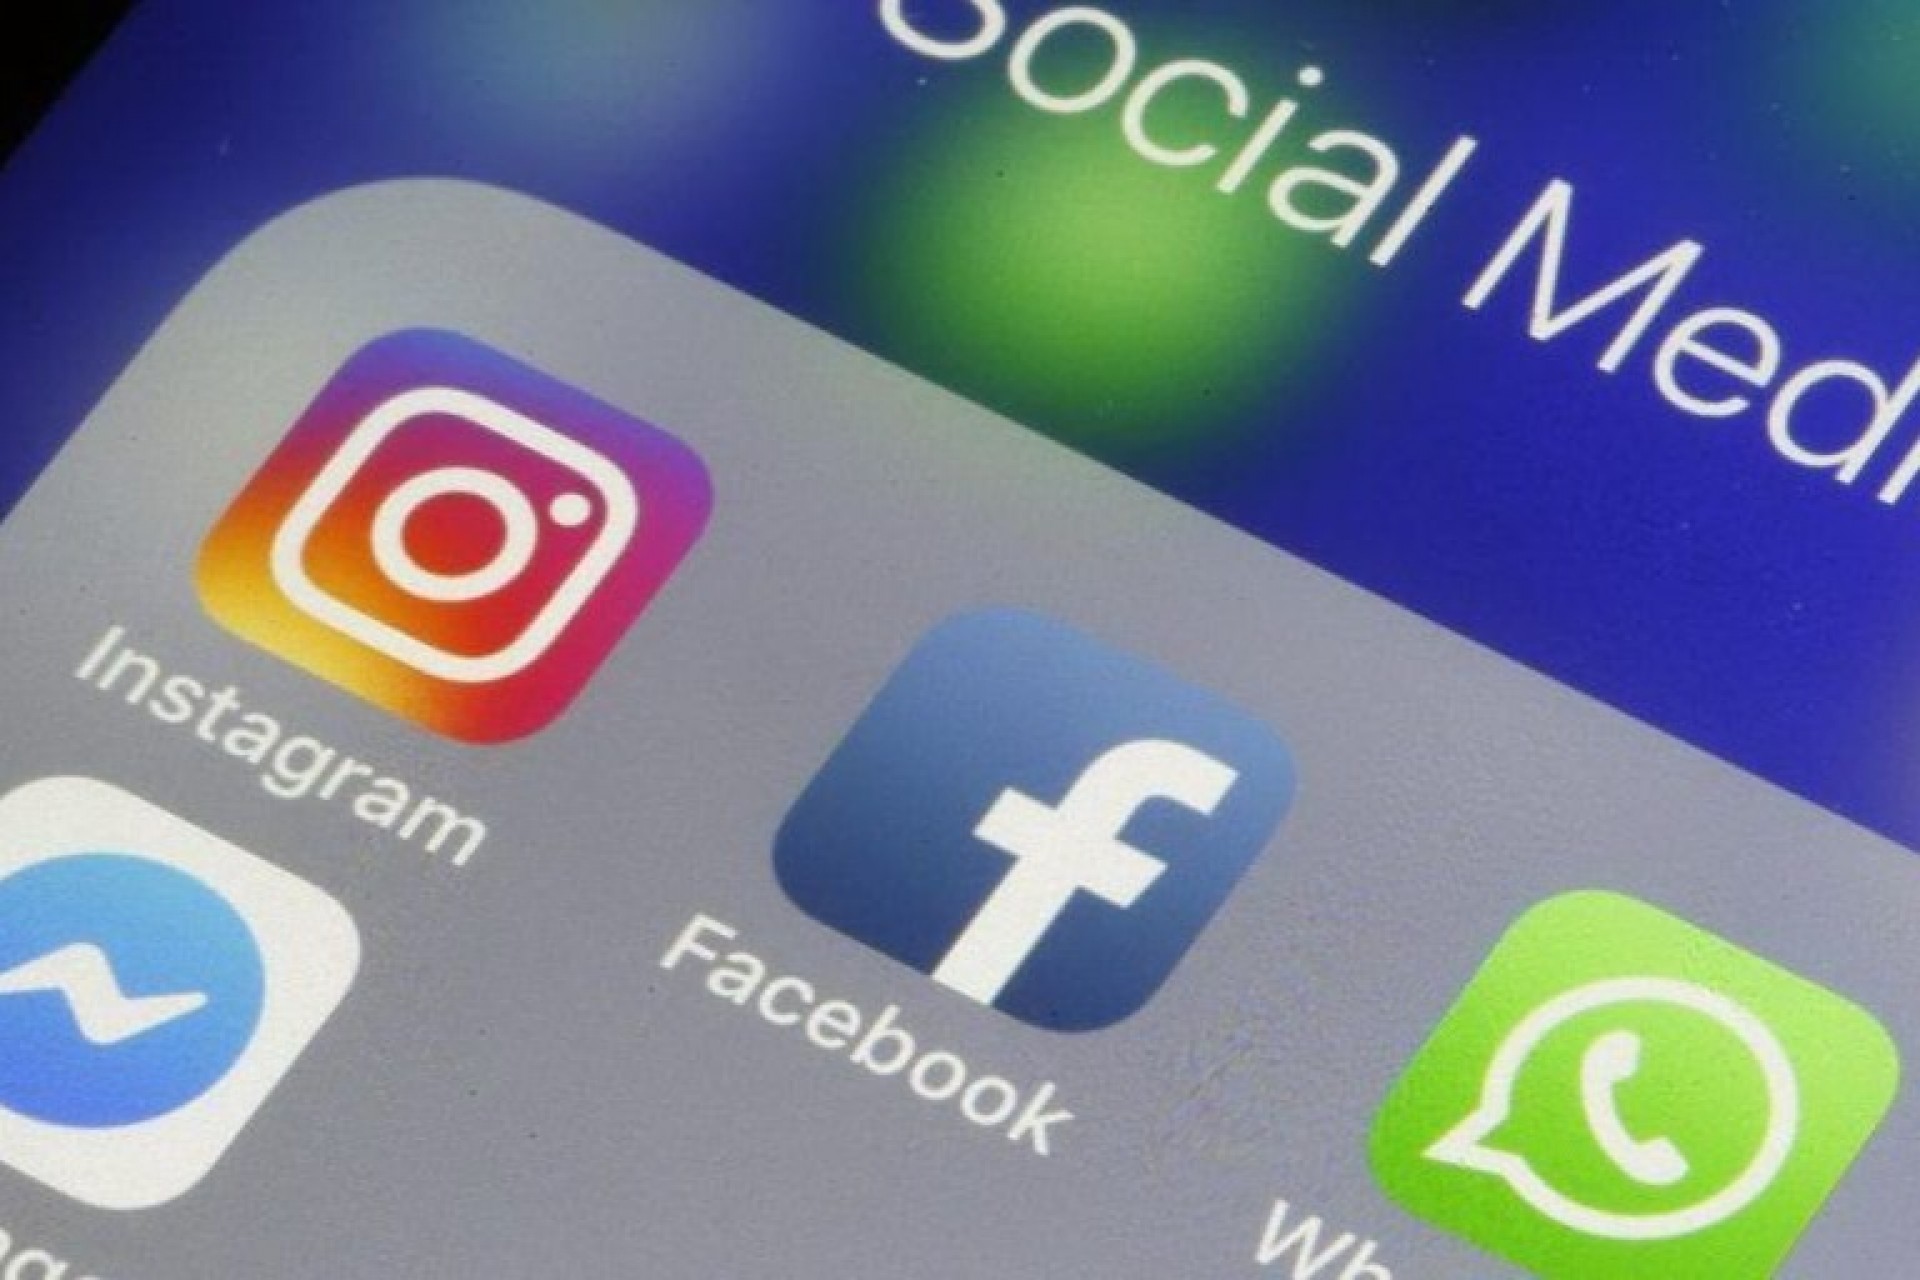 Pane global afeta WhatsApp, Facebook e Instagram e deixa serviços fora do ar